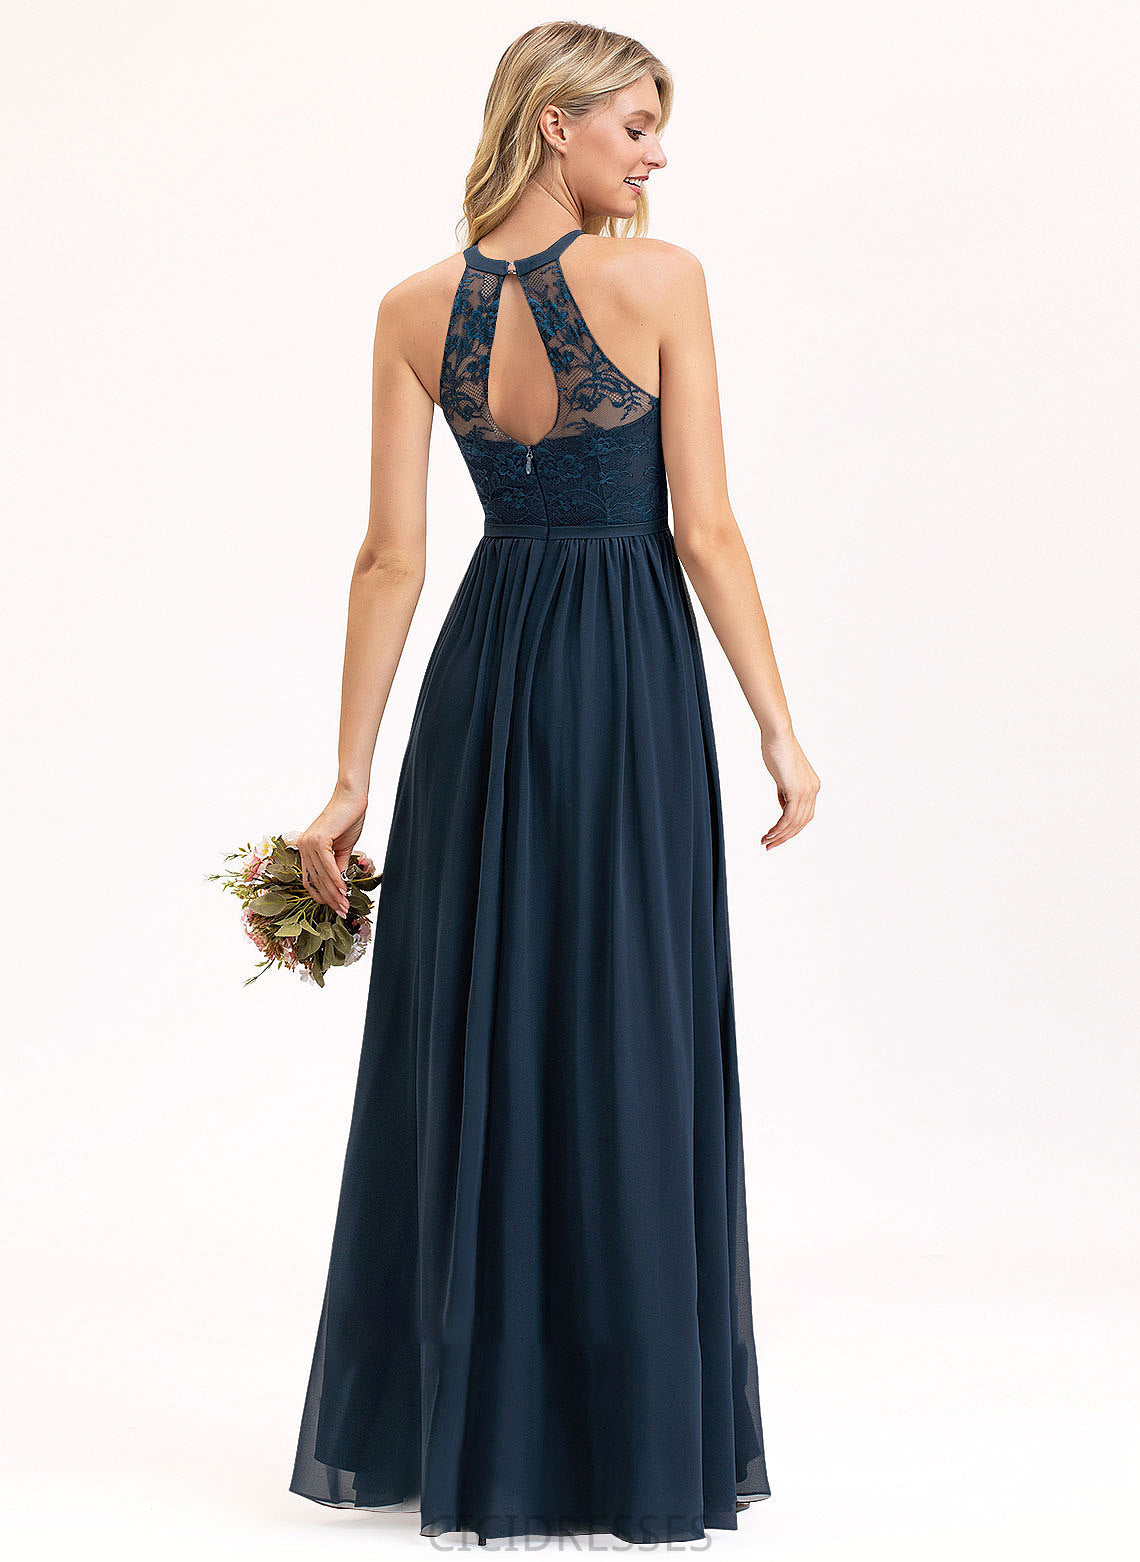 ScoopNeck A-Line Fabric Neckline Floor-Length Embellishment Silhouette SplitFront Length Frances A-Line/Princess Natural Waist Bridesmaid Dresses